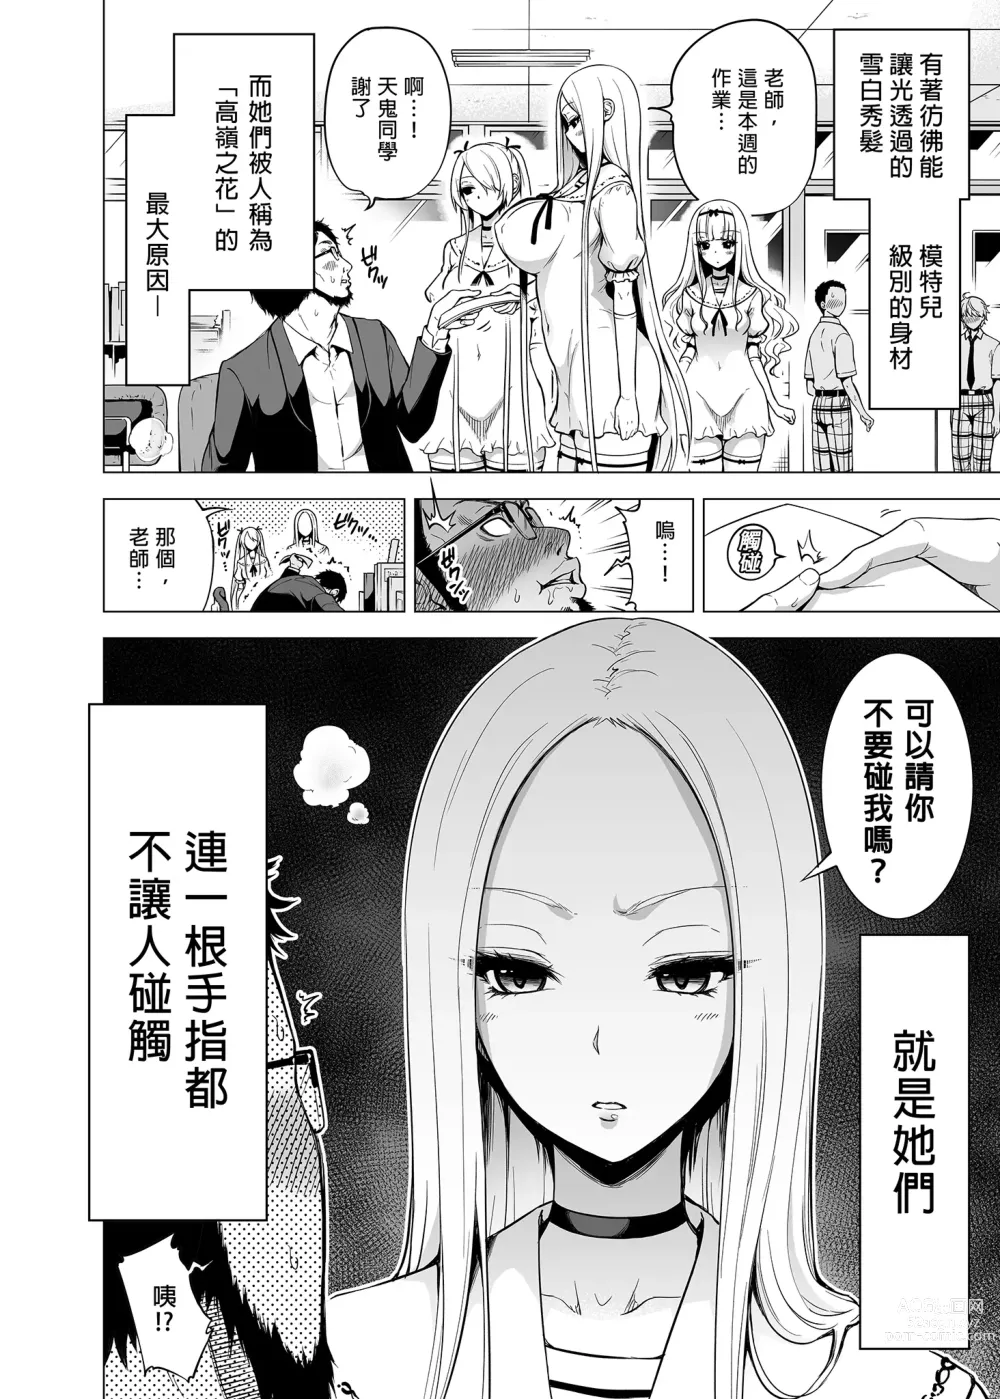 Page 3 of doujinshi 三姐妹1-2 七夏1-6 无马